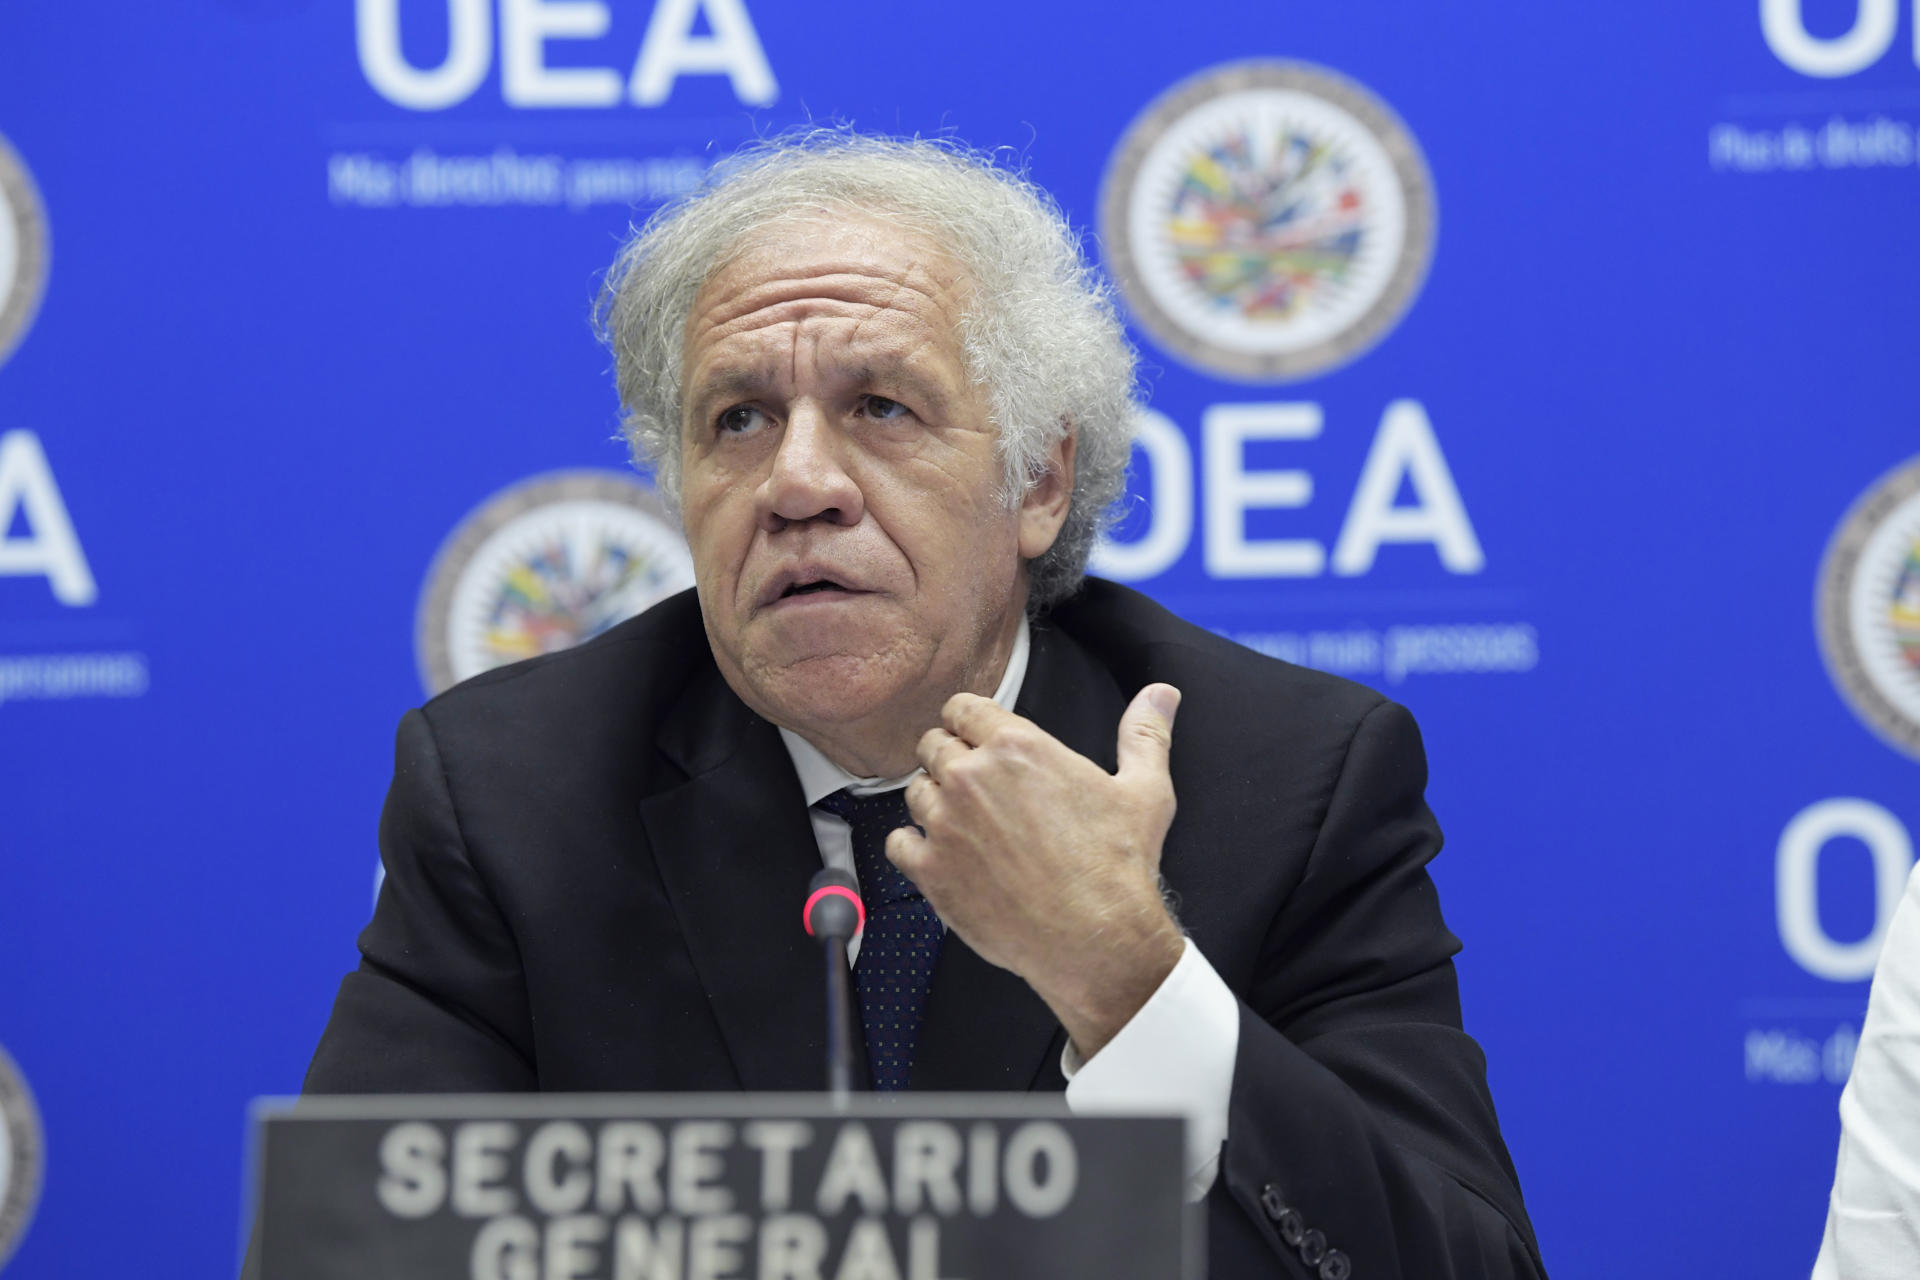 El secretario general de la OEA, Luis Almagro, en una fotografía de archivo. EFE/Lenin Nolly